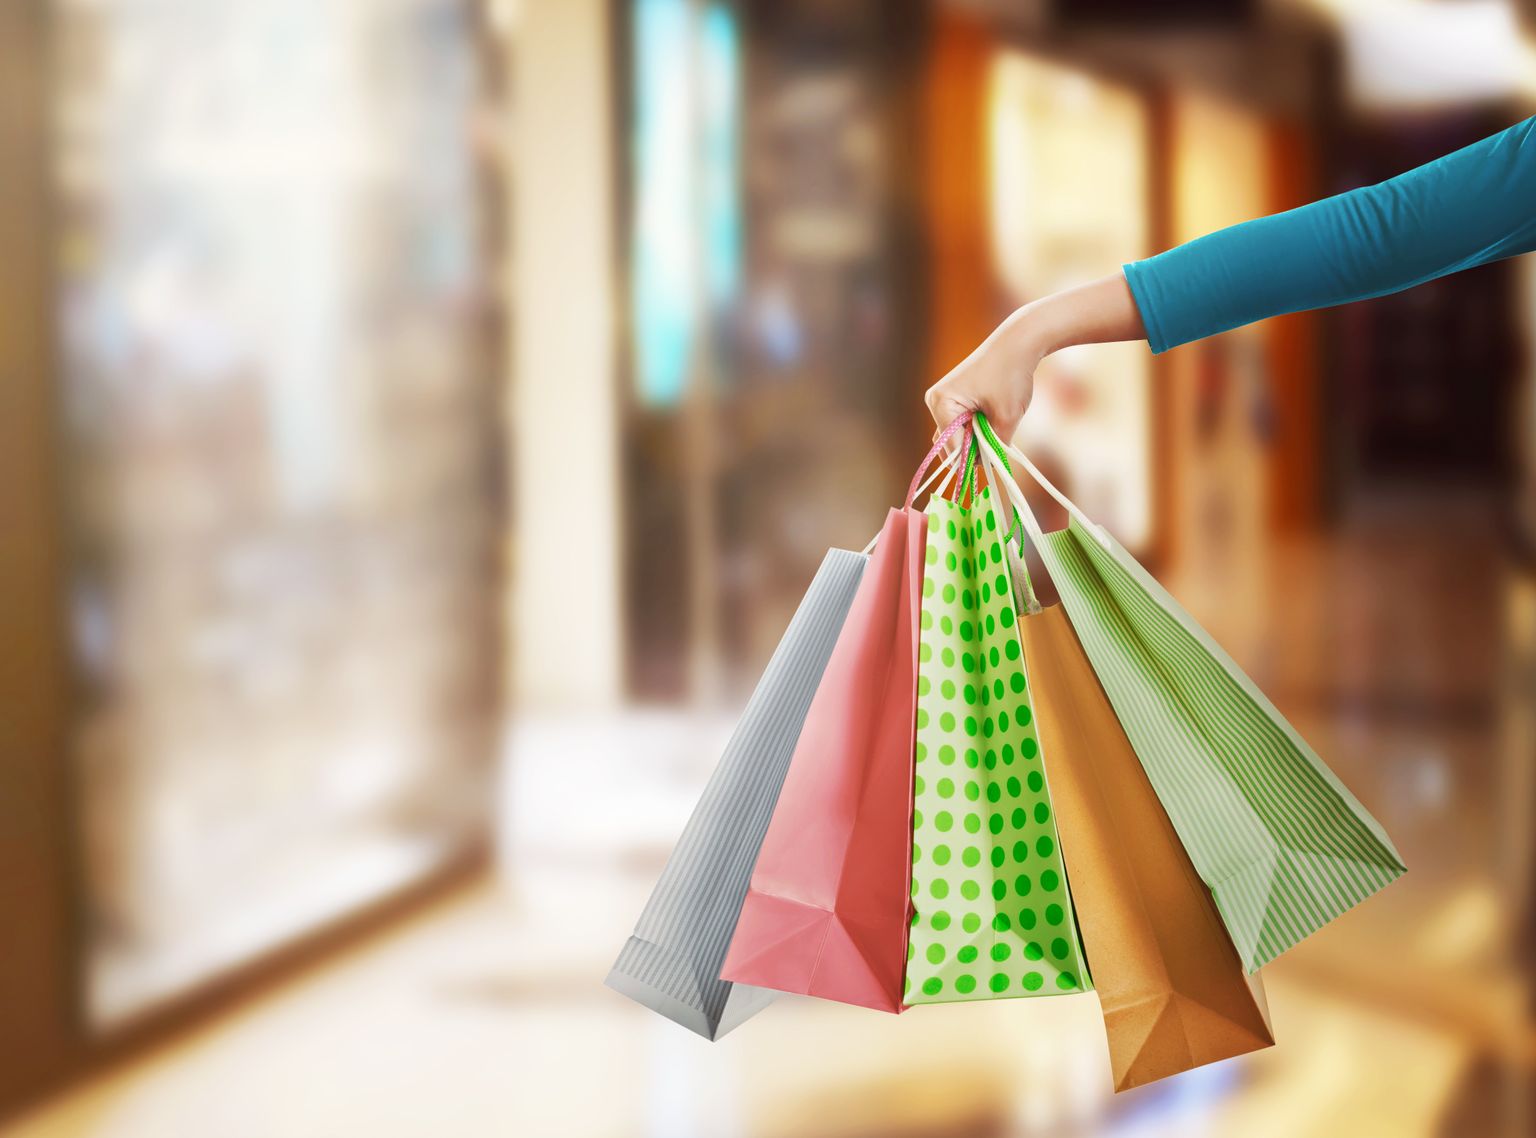 Tarbijakaitseamet soovitab tarbijatel juba kaupluses ostu sooritades veenduda, kas eestikeelne kasutusjuhend on olemas ning vajadusel küsida seda müüjalt.